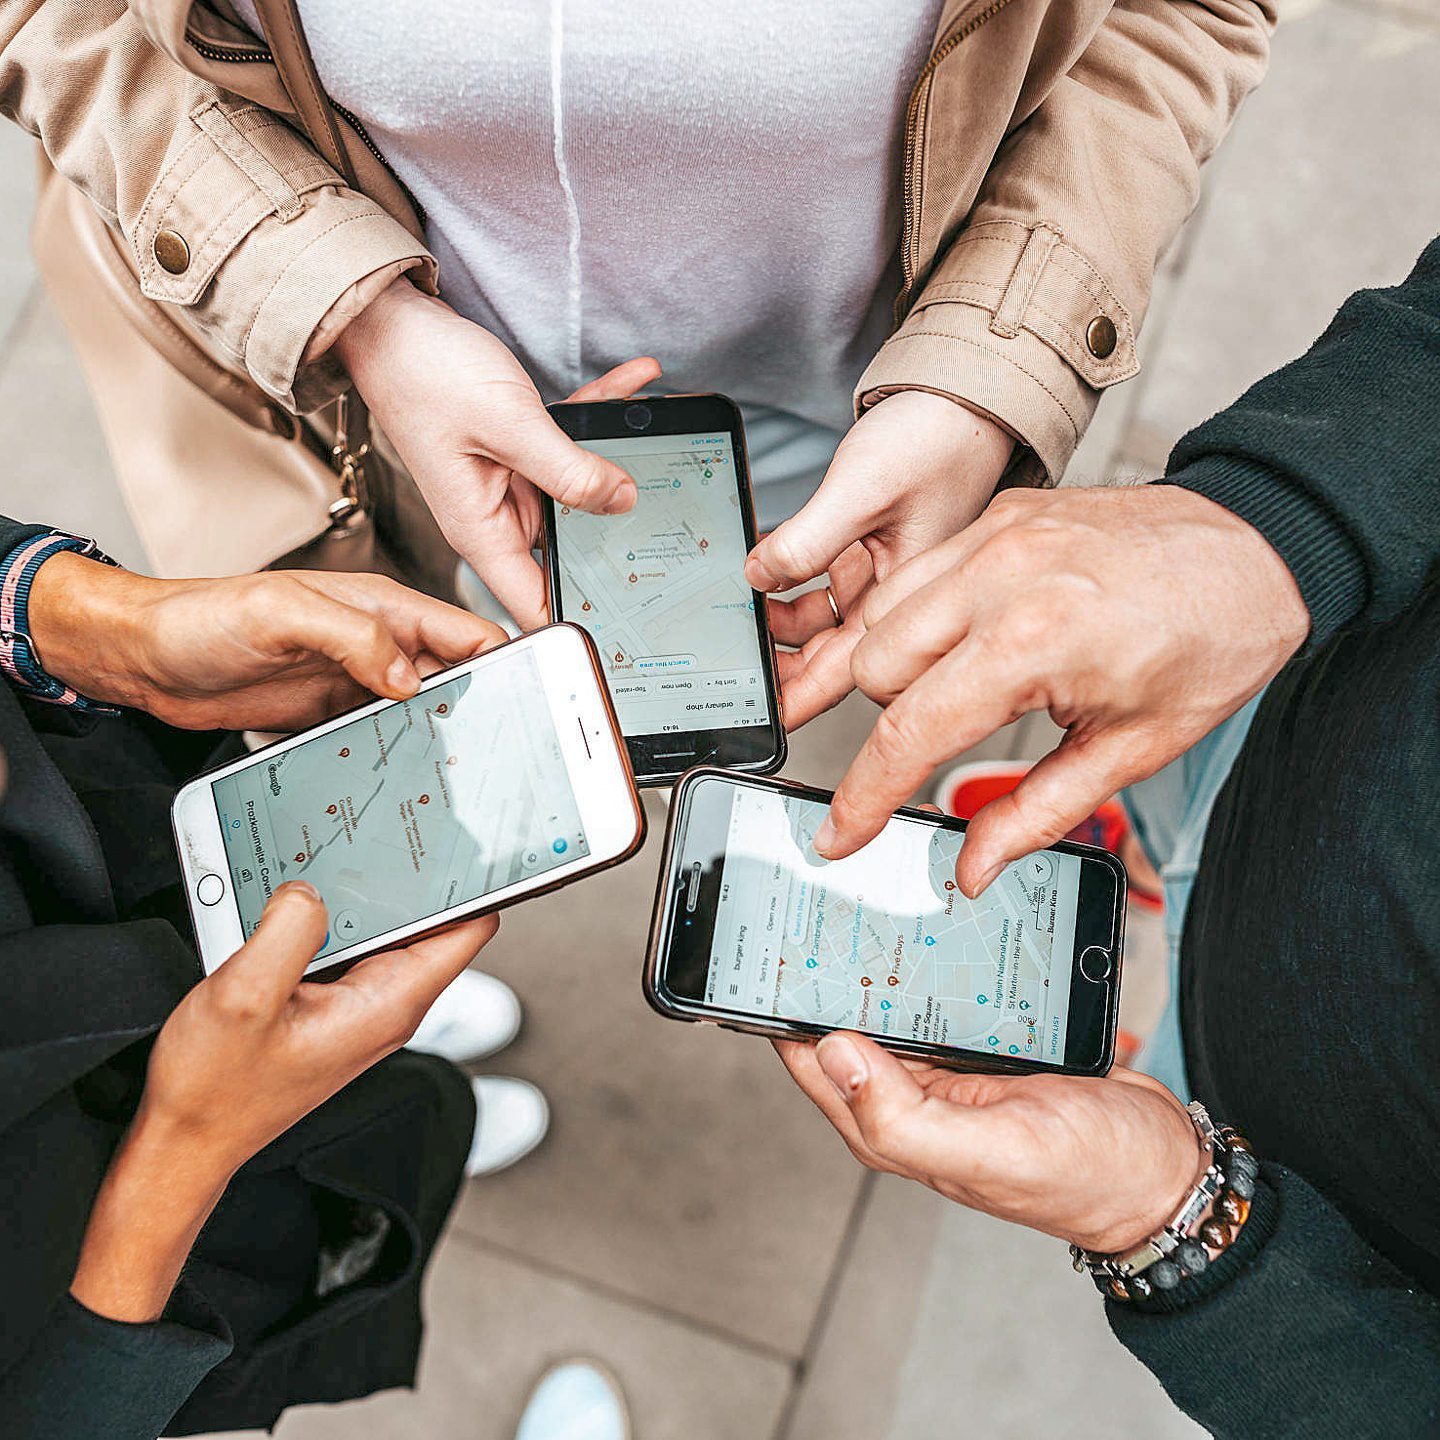 Internationale Proficiat ontwikkelen Je smartphone gebruiken als gps – Vlaams Compostelagenootschap